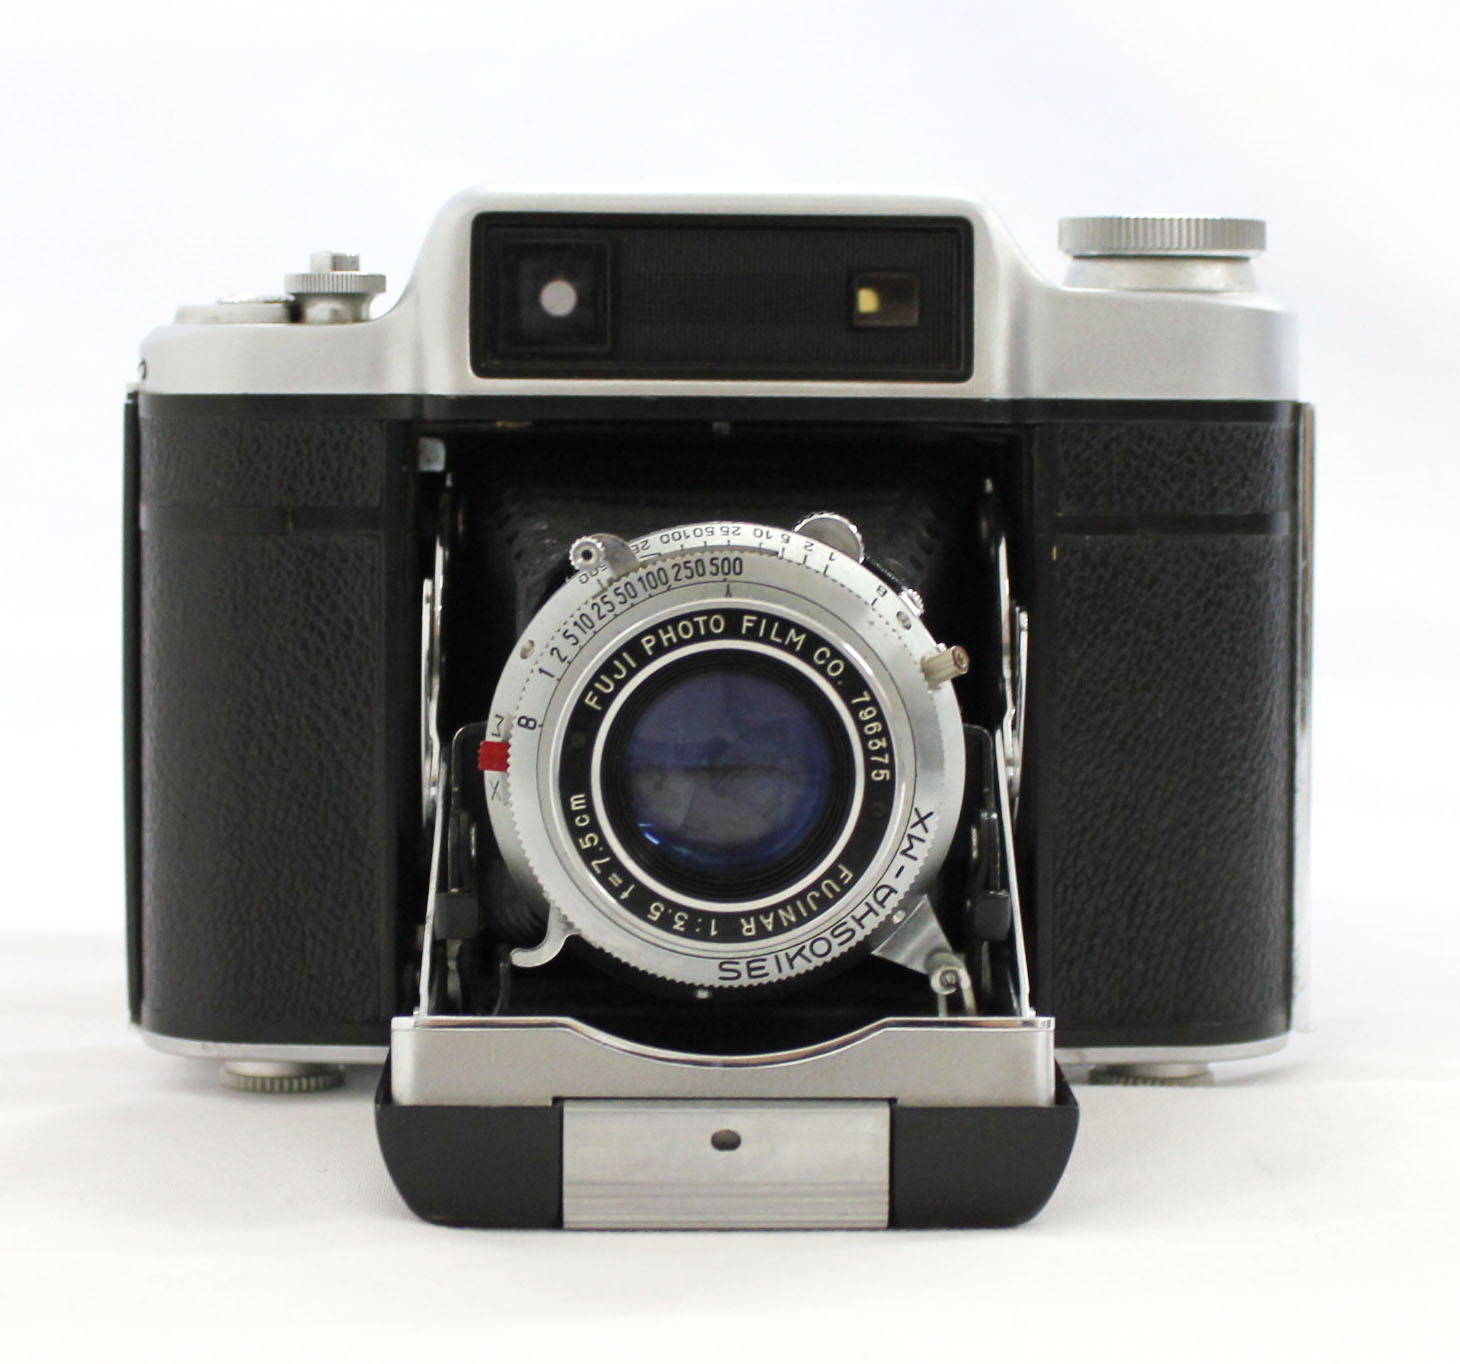  Fuji Super Fujica-6 Six 6x6 Medium Format Film Camera with Fujinar 75mm F/3.5 from Japan Photo 3